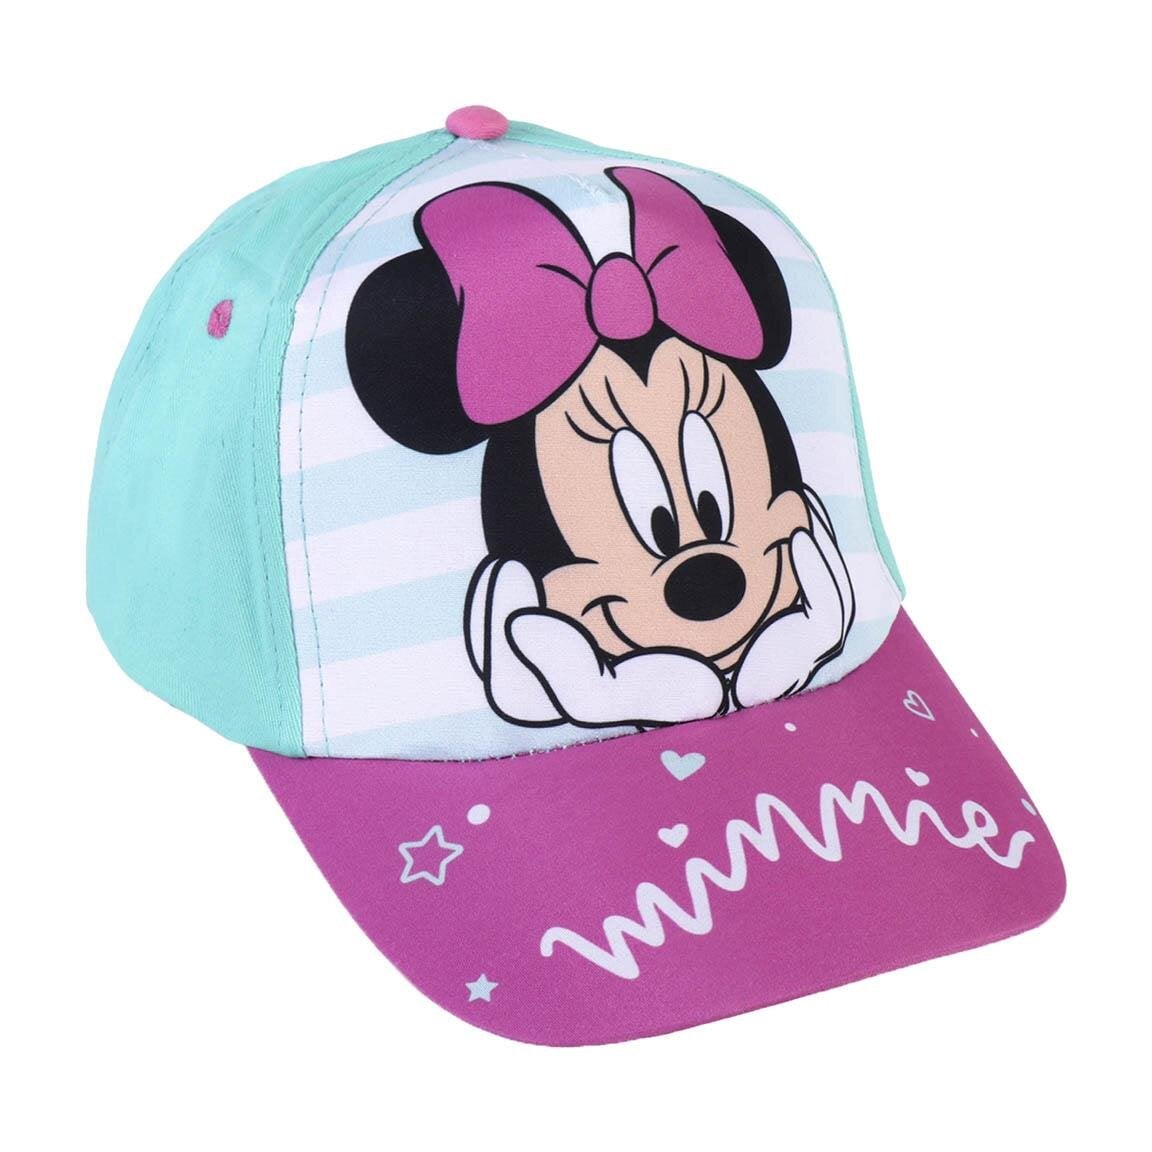 Minnie Maus - Kappe und Sonnenbrille für Kinder